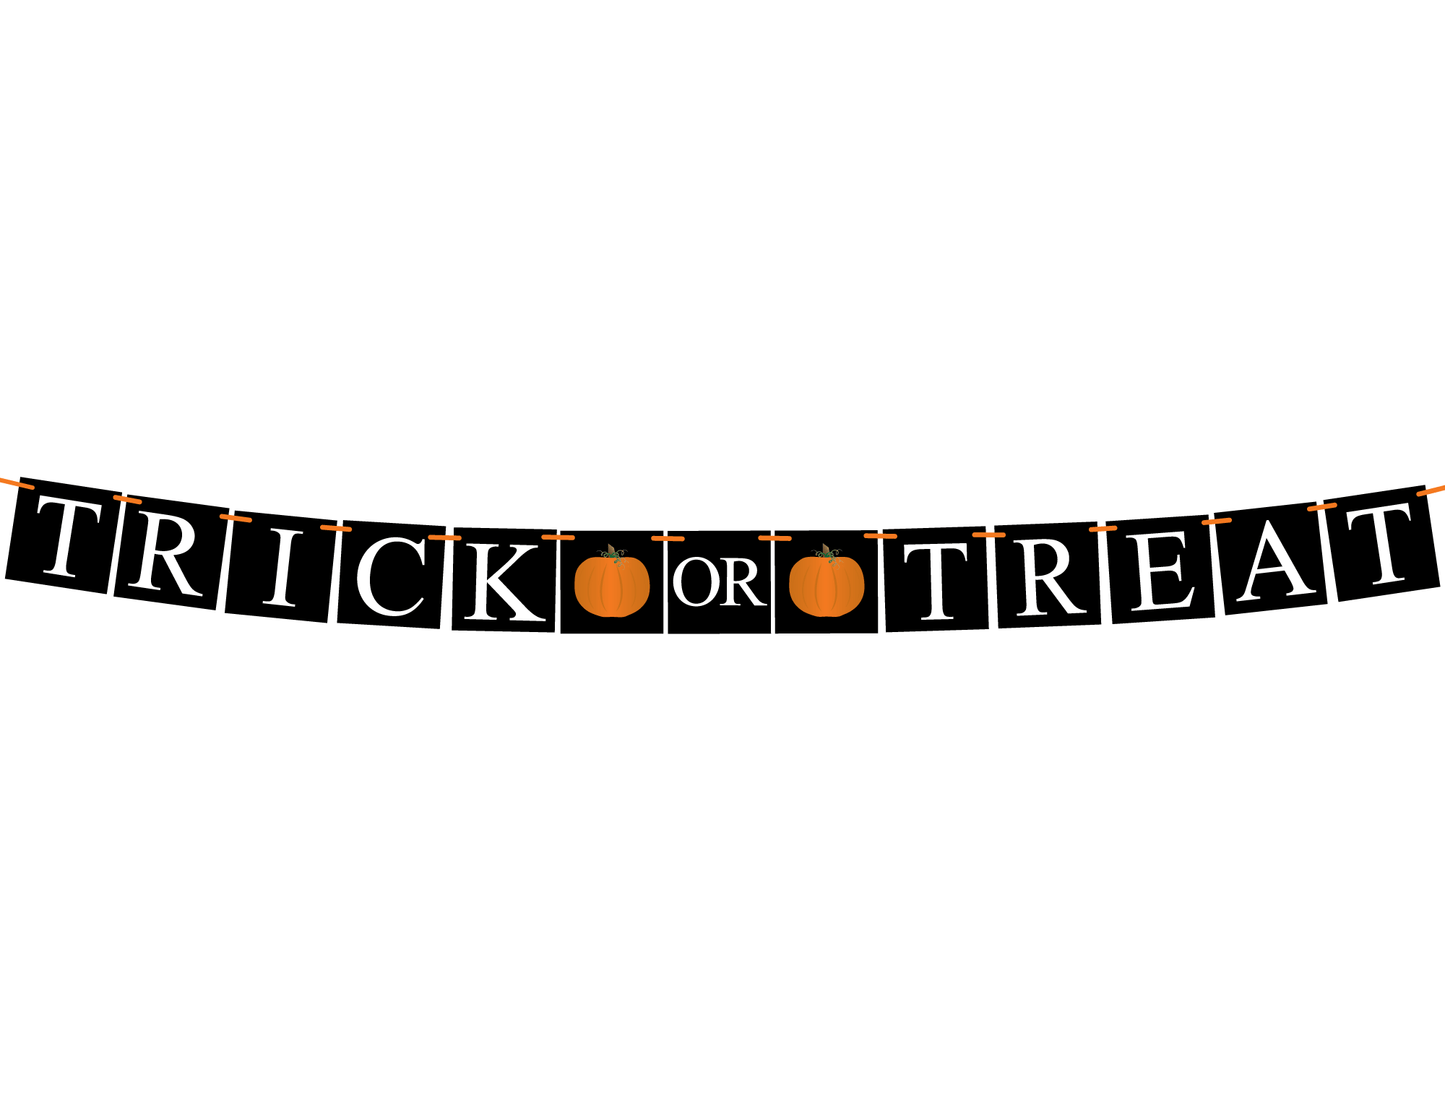 DIY trick or treat banner - Celebrating Together